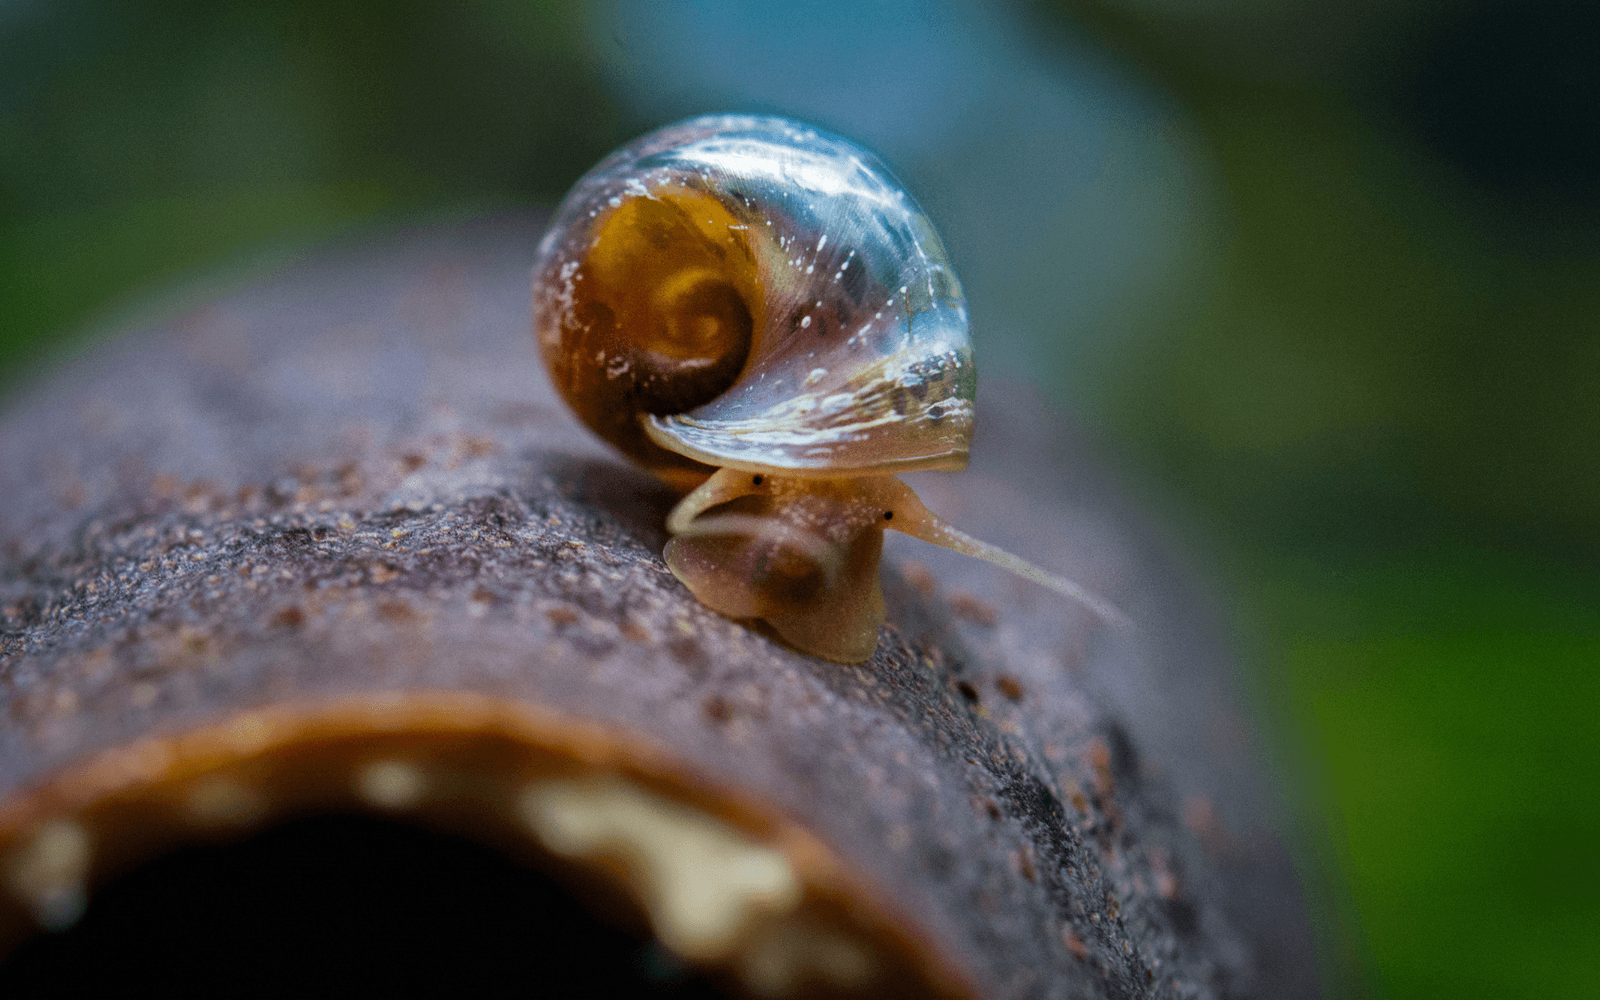 Ramshorn snail on wood